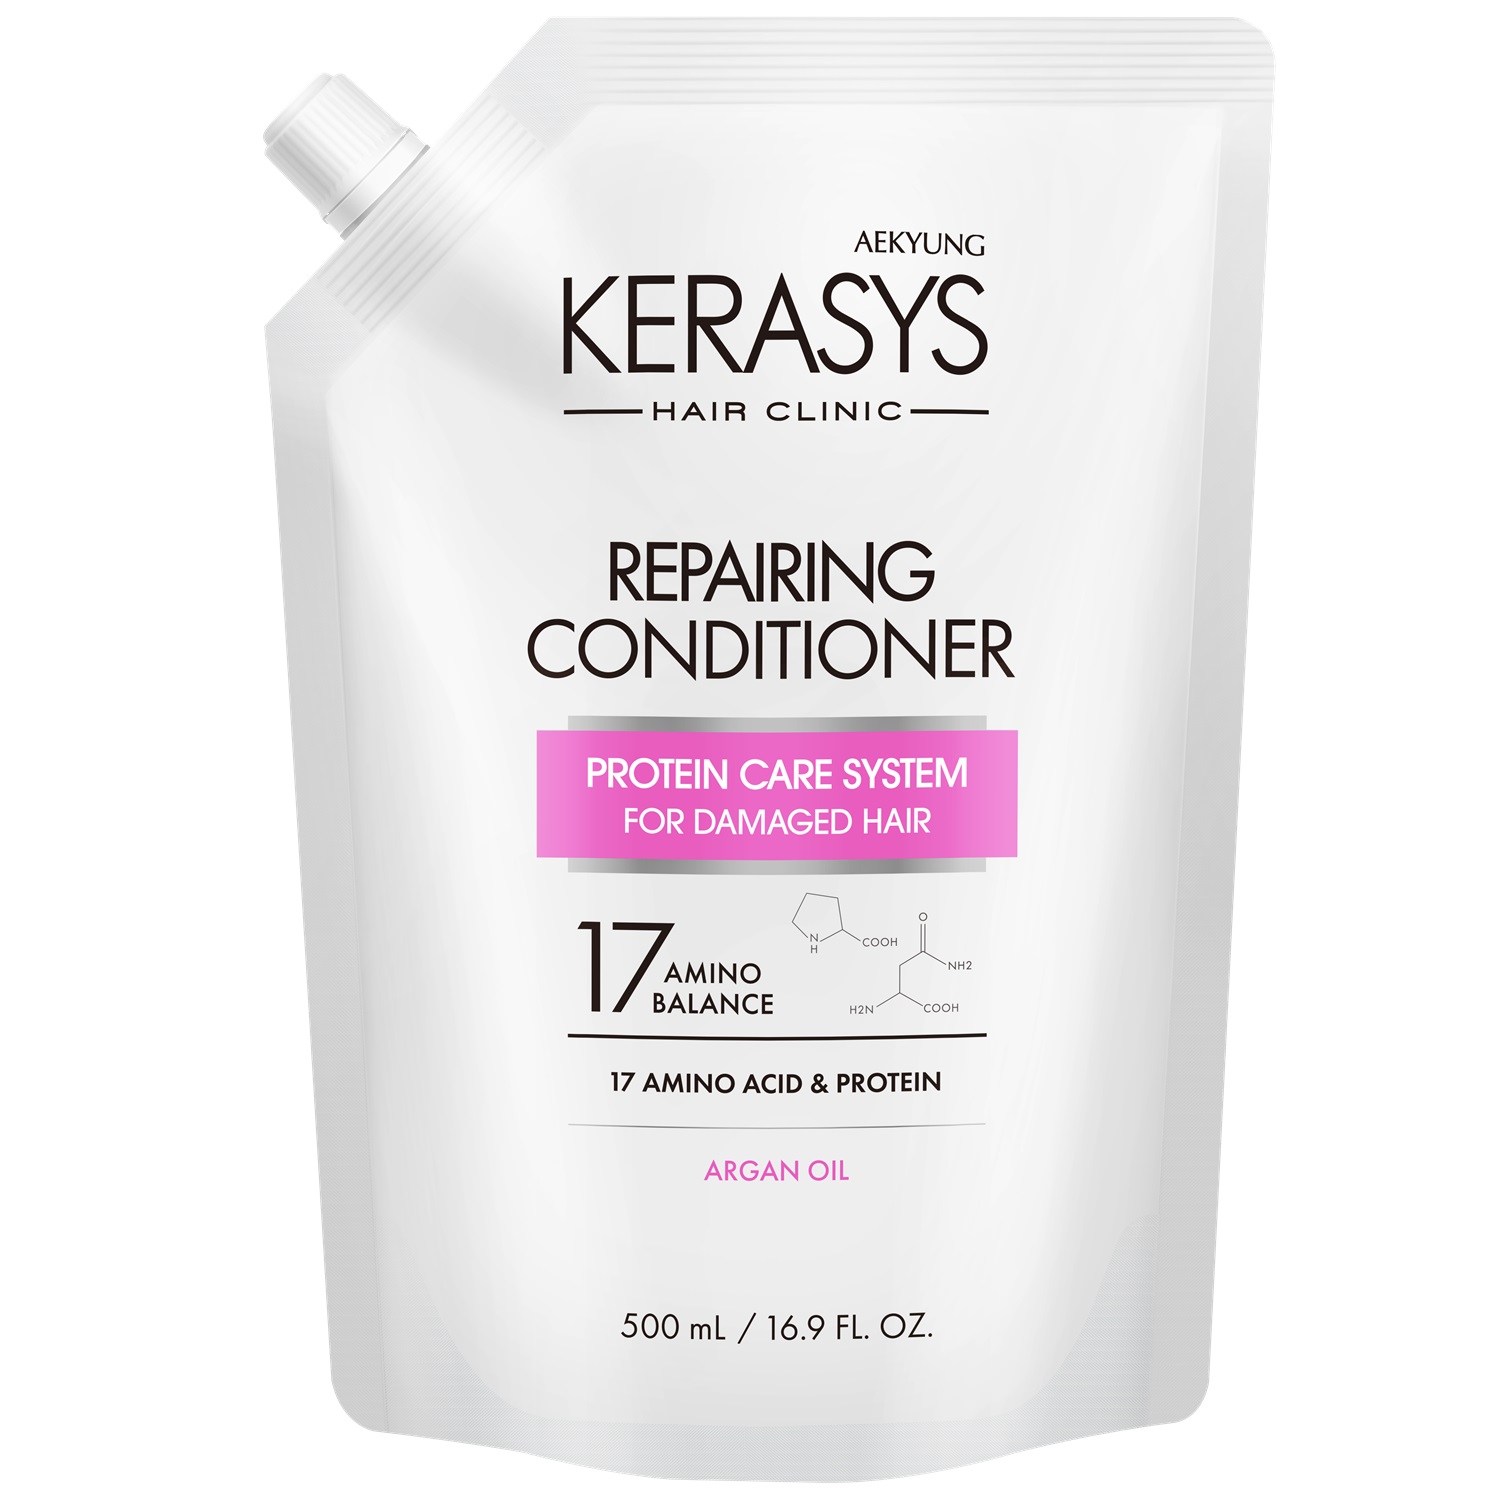 Kerasys Кондиционер для волос восстанавливающий, запасной блок 500 мл (Kerasys, Hair Clinic) kerasys шампунь для волос восстанавливающий запасной блок 500 мл kerasys hair clinic